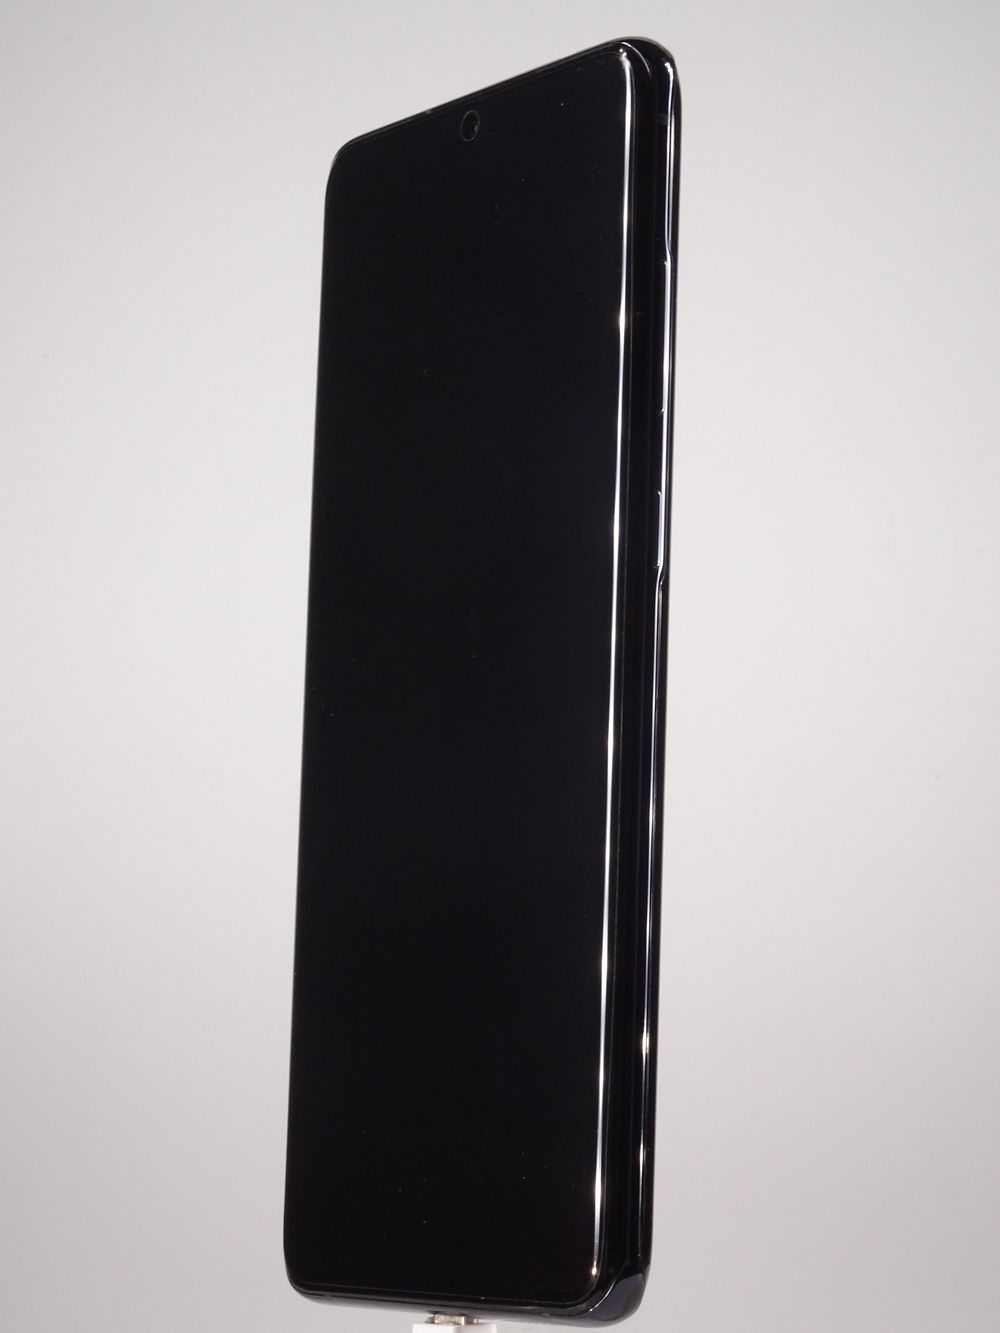 Κινητό τηλέφωνο Samsung Galaxy S20 Ultra, Cosmic Black, 512 GB, Excelent